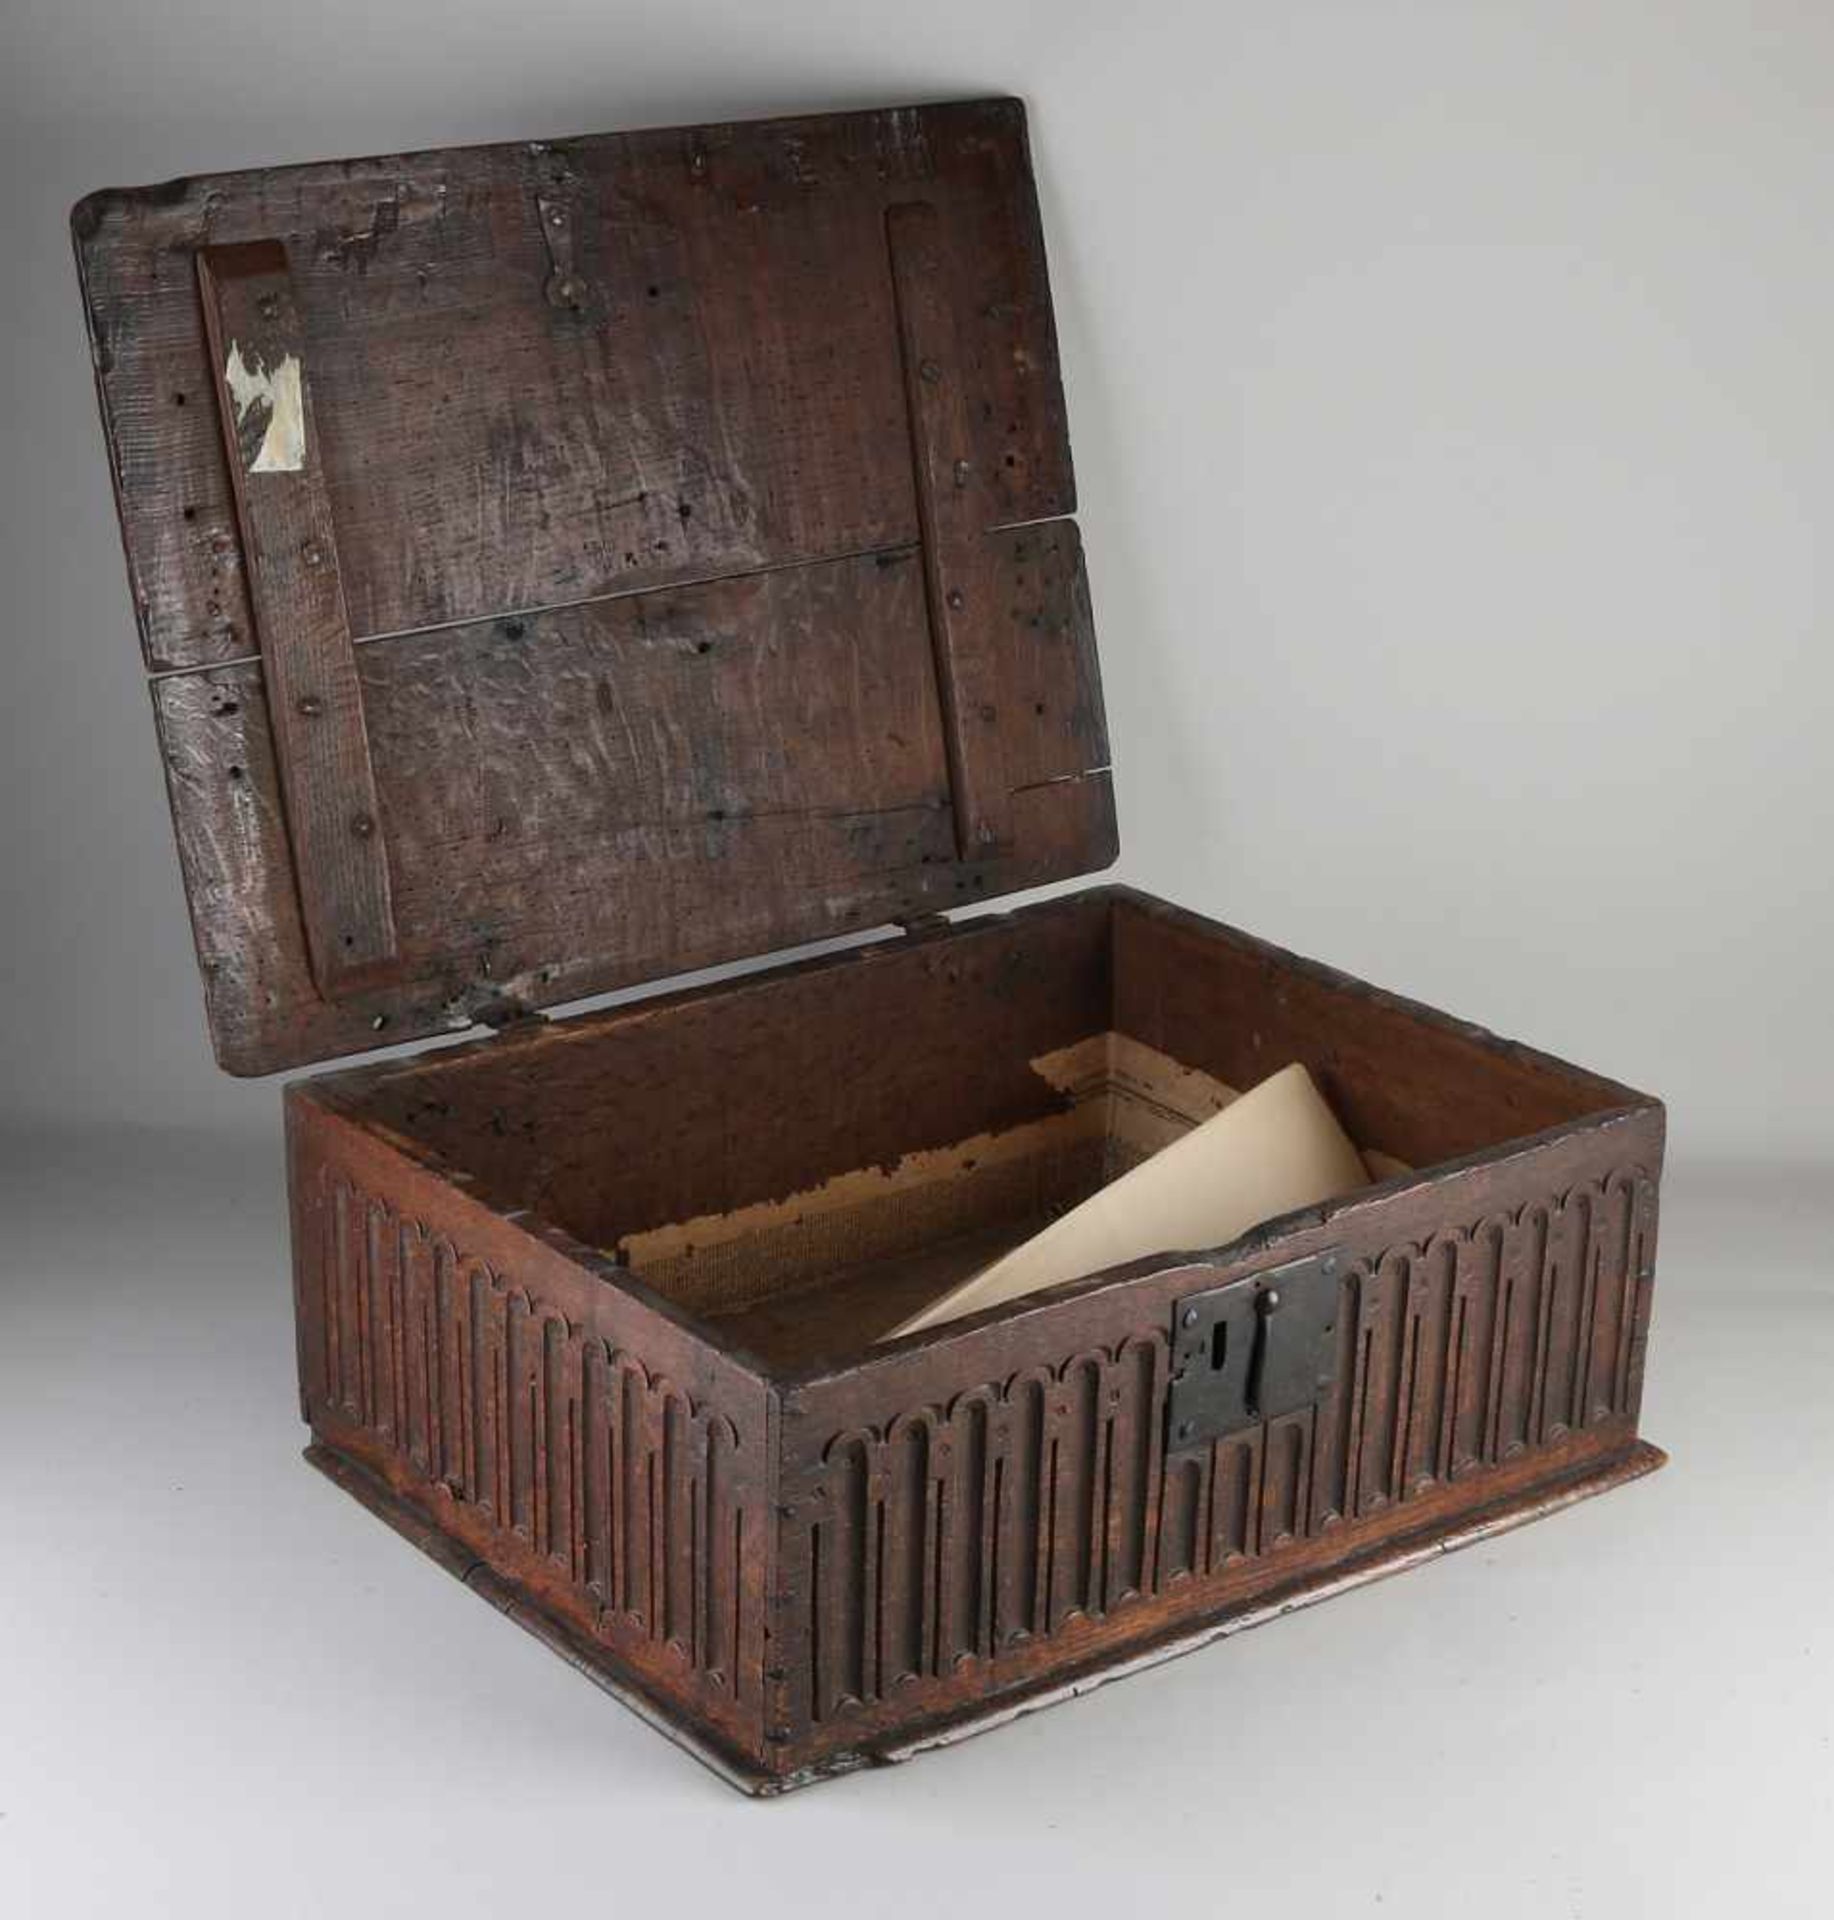 Seltene gotische Bibelbox aus Eichenholz mit originalem Schloss + Beschlägen. Ca. 1650. Abmessunge - Image 2 of 2